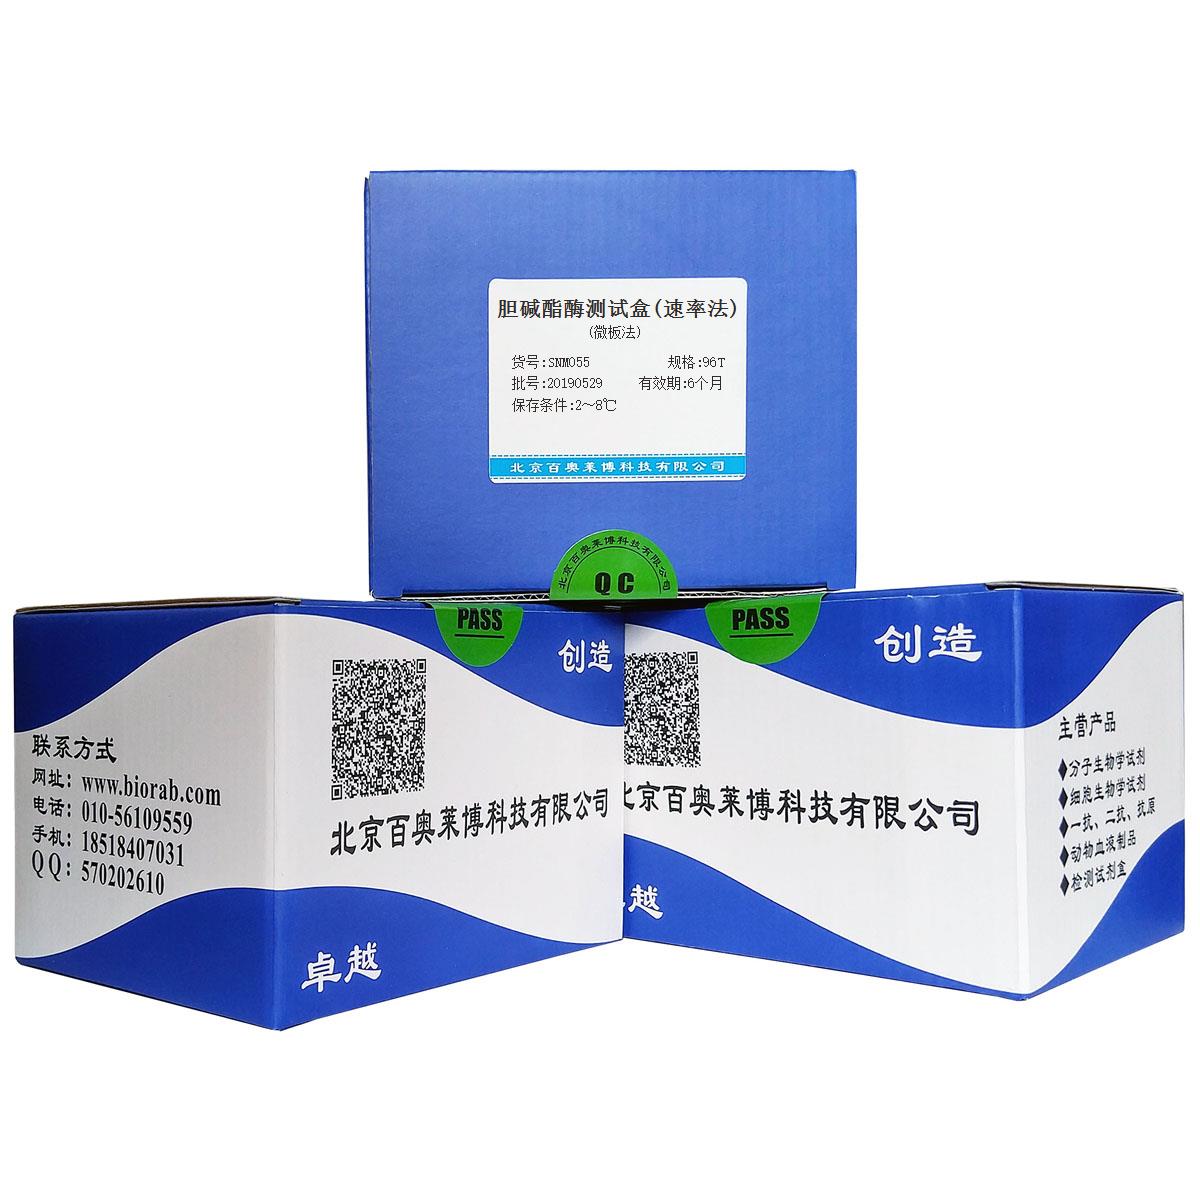 胆碱酯酶测试盒(速率法)(微板法)北京品牌